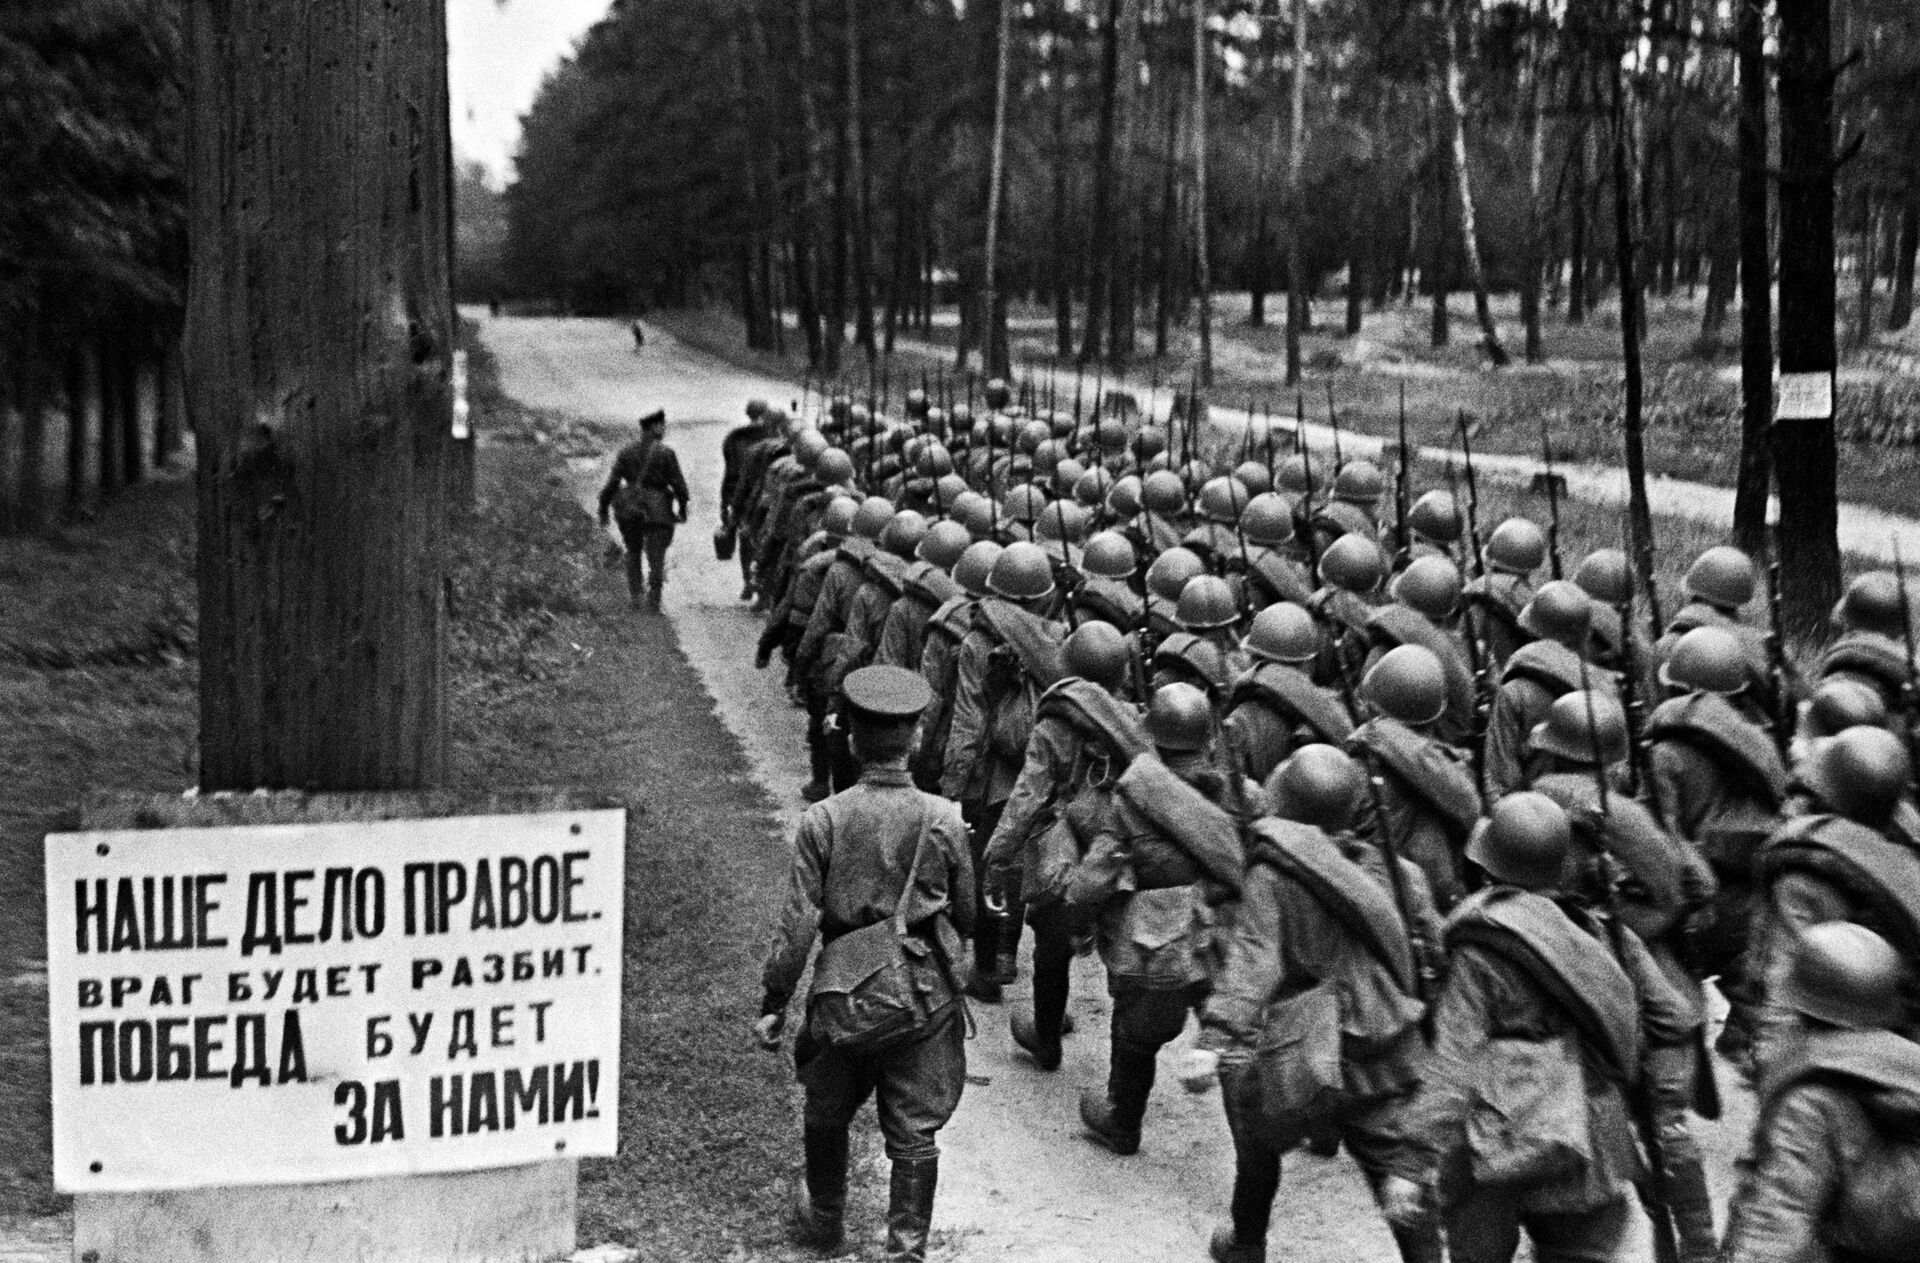 Recruits leave for front during mobilization, June 23, 1941 - Sputnik International, 1920, 11.11.2021